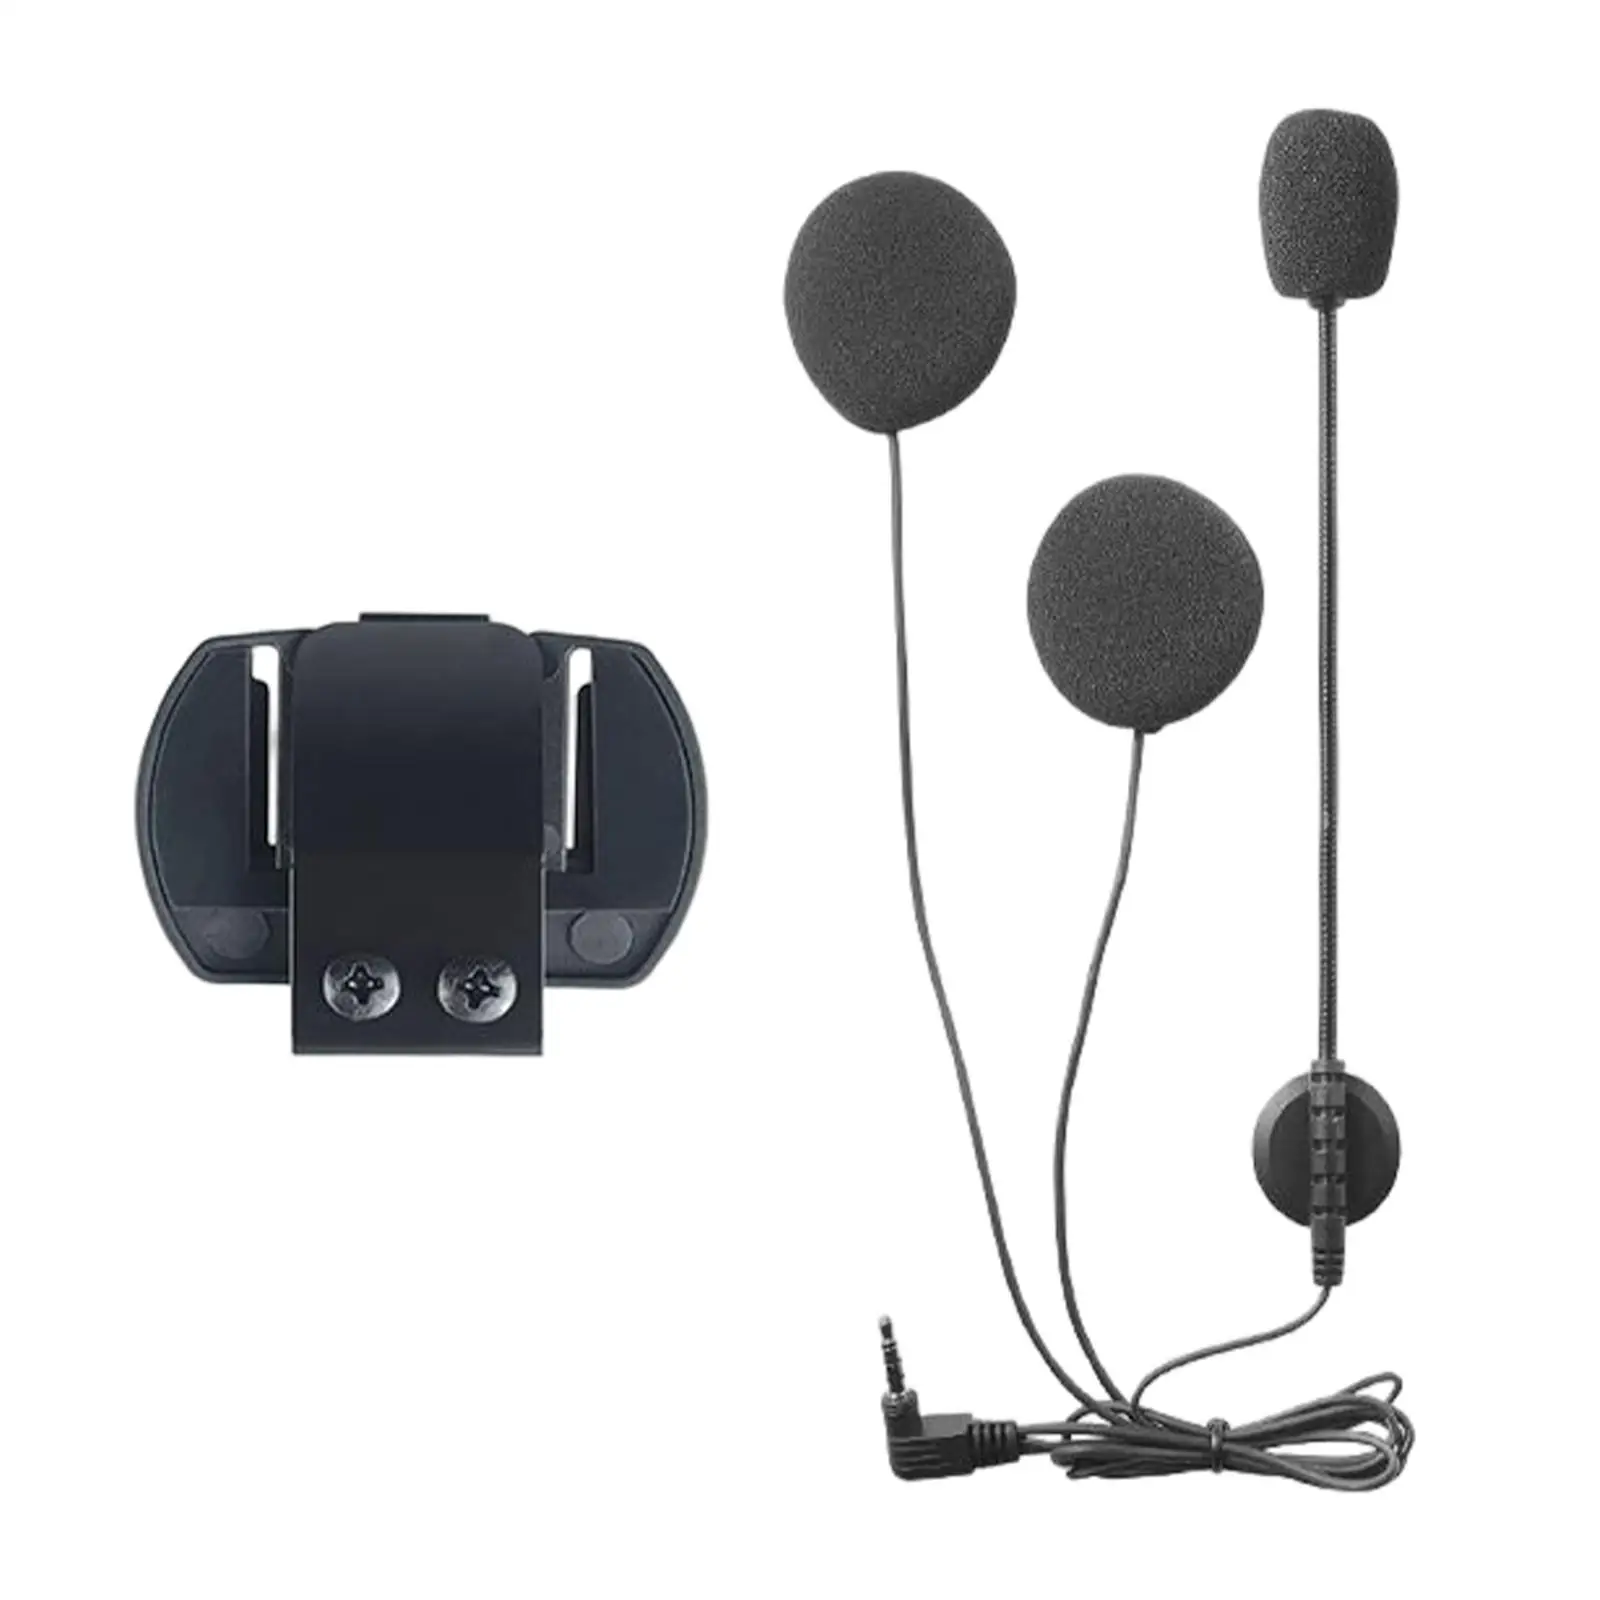 Upgrade Motorcycle Helmet Intercom Speakers Earphone Interphone Low Latency